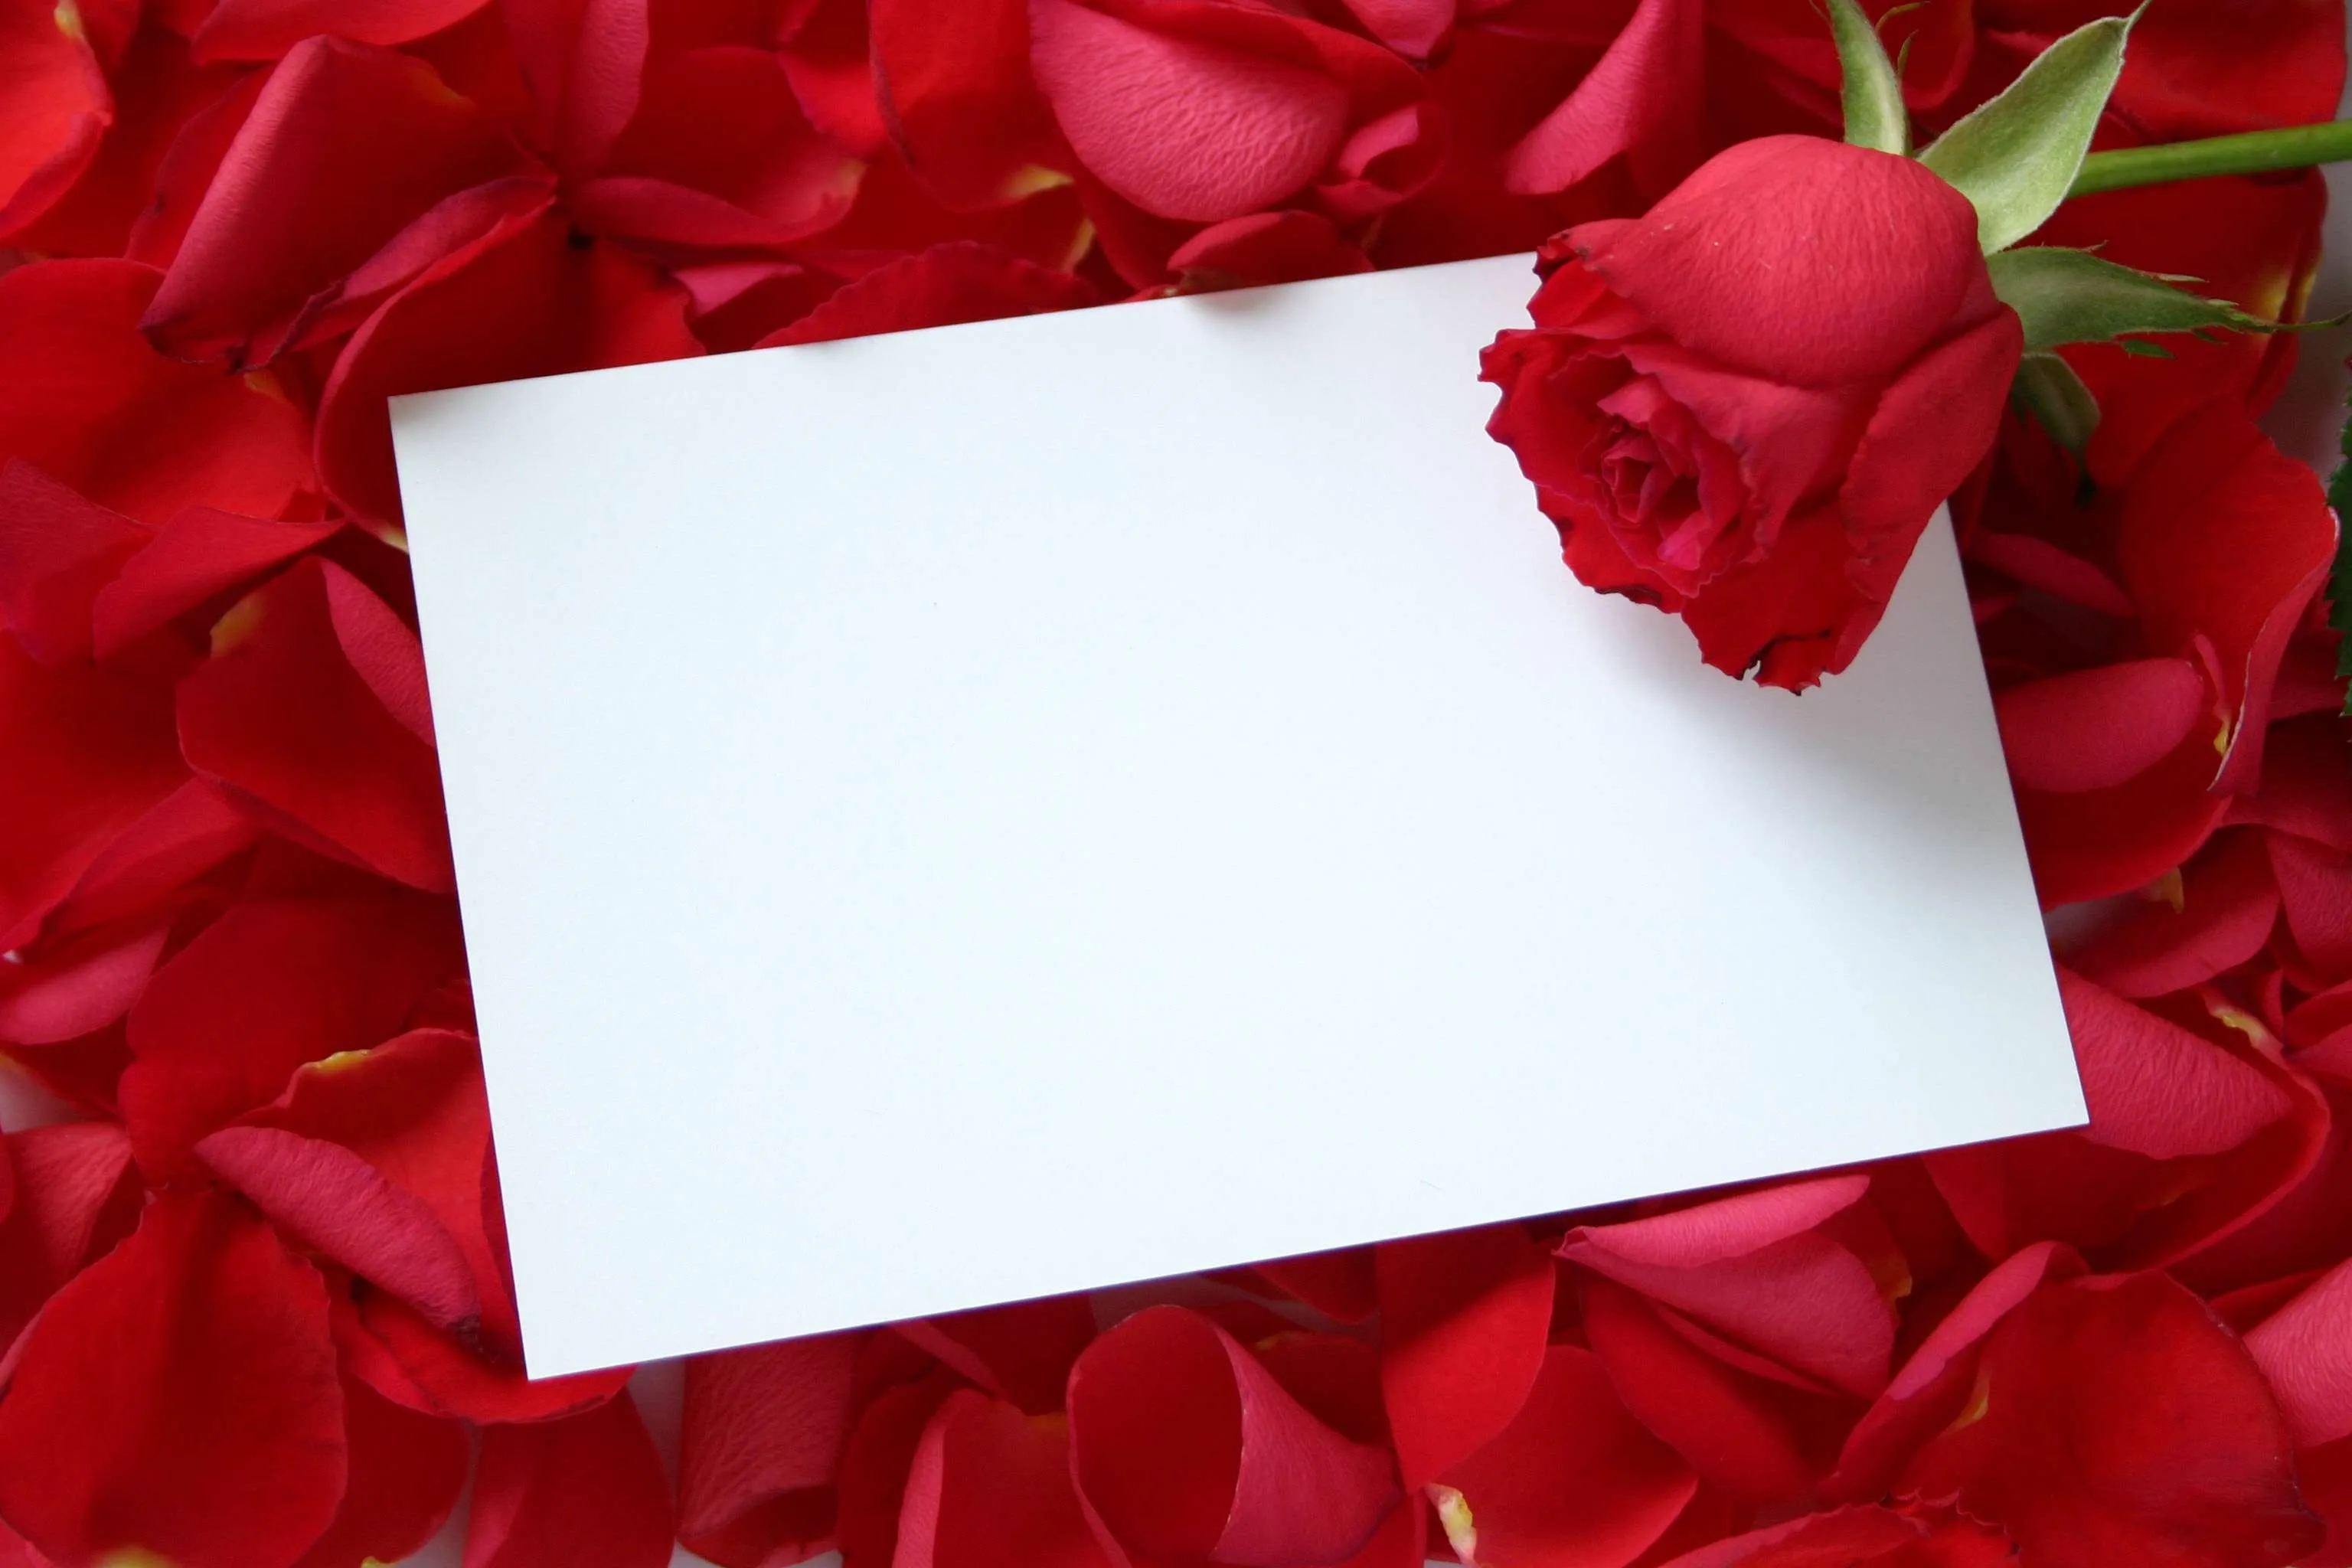 Fondos de flores para tarjetas de matrimonio - Imagui